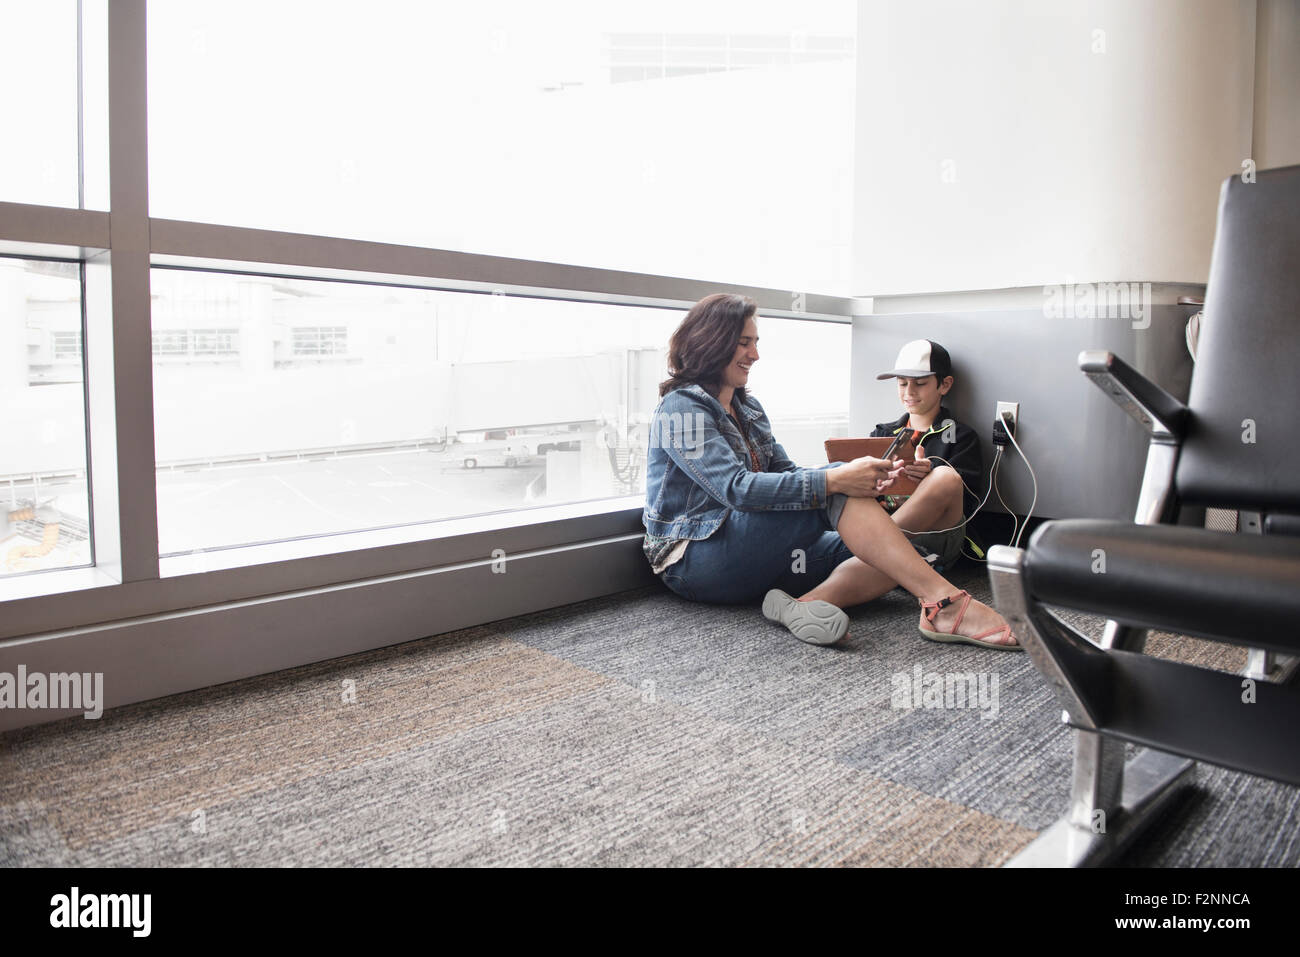 Madre e hijo mediante tableta digital en el aeropuerto Foto de stock